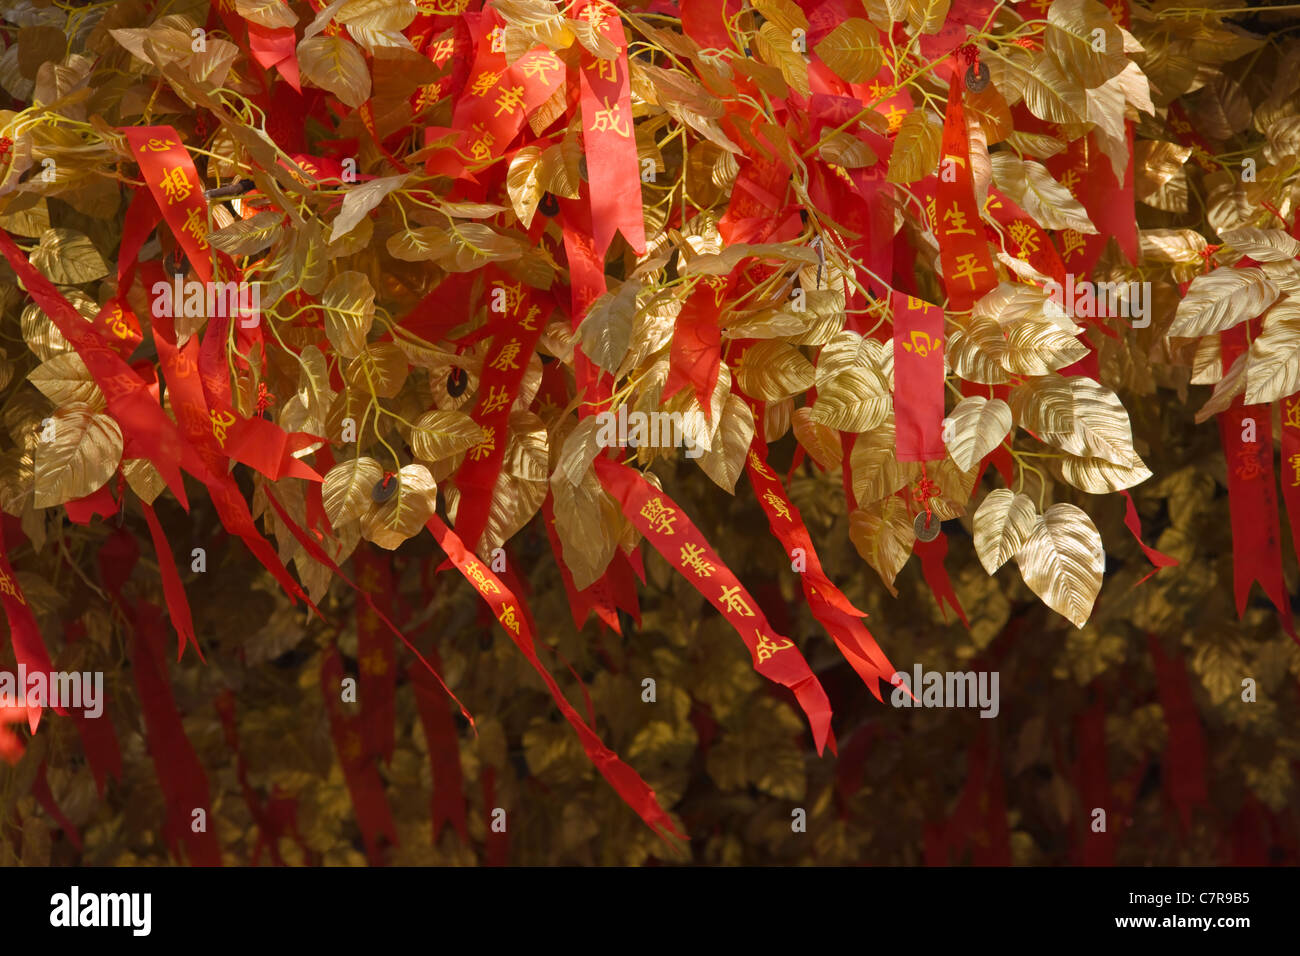 Arbre des désirs bien décorées avec des rubans rouges et de feuilles dorées, Nanjing, Jiangsu Province, China Banque D'Images